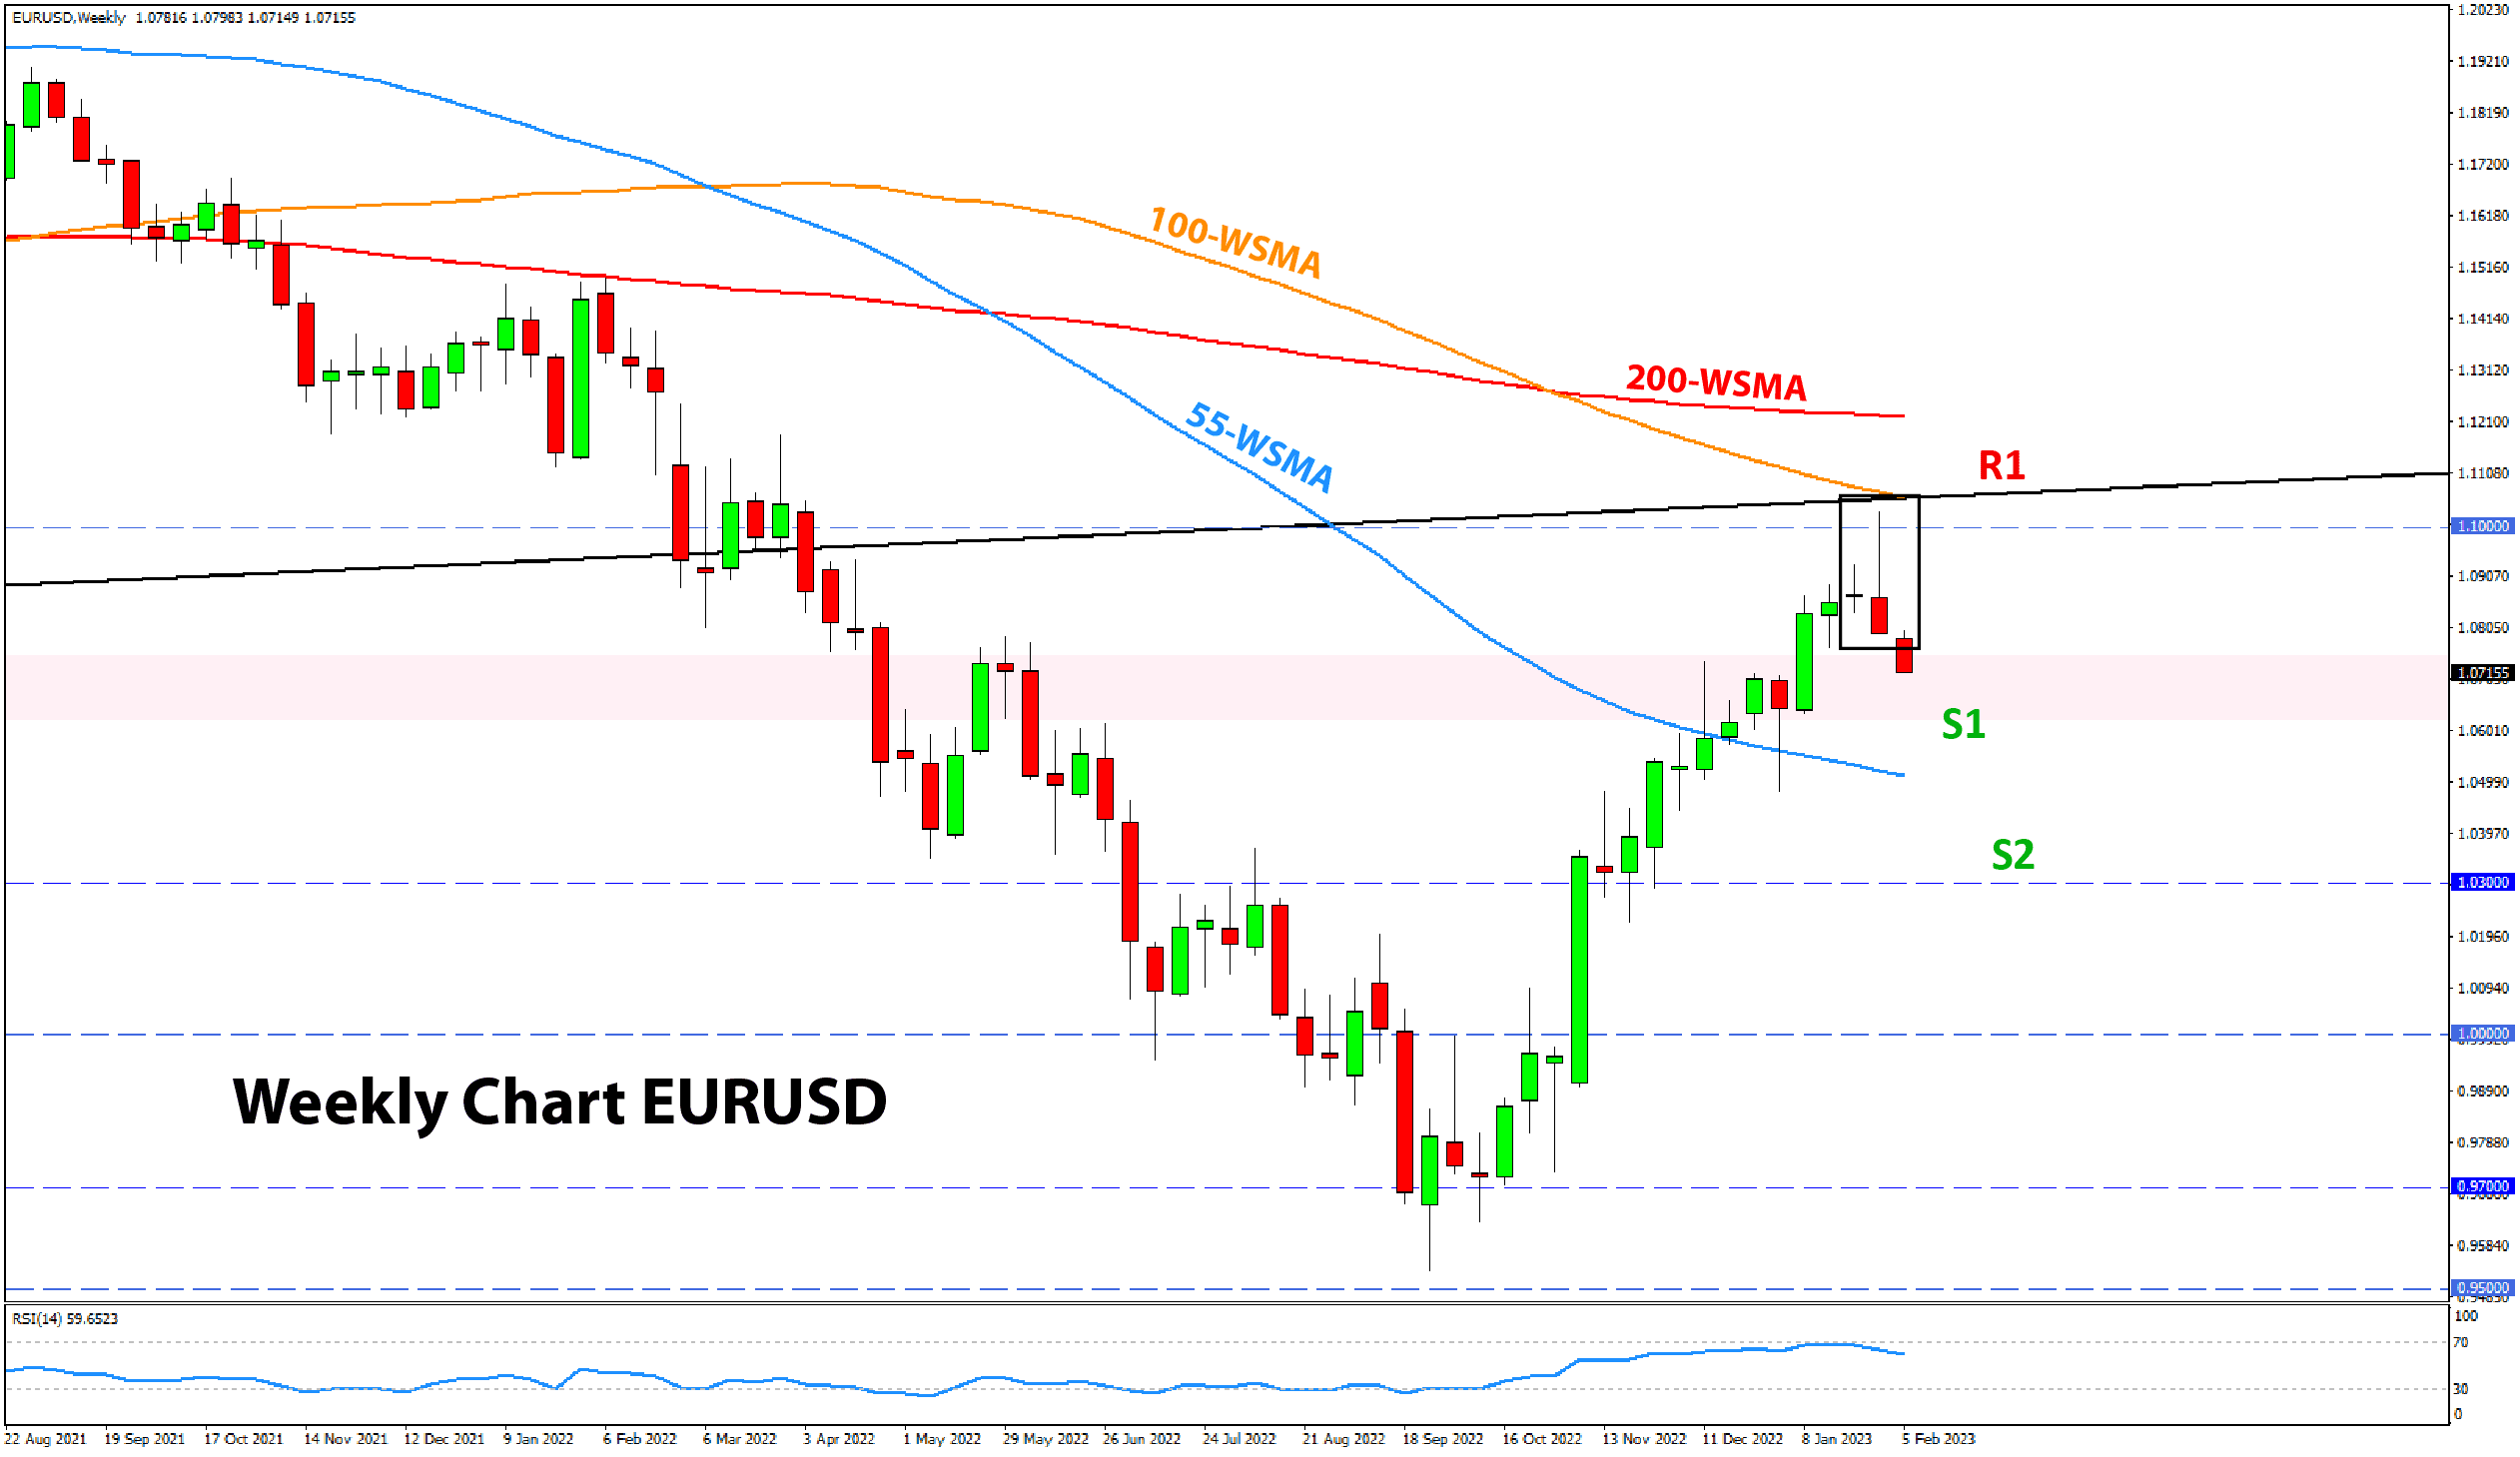 EURUSD chart analysis